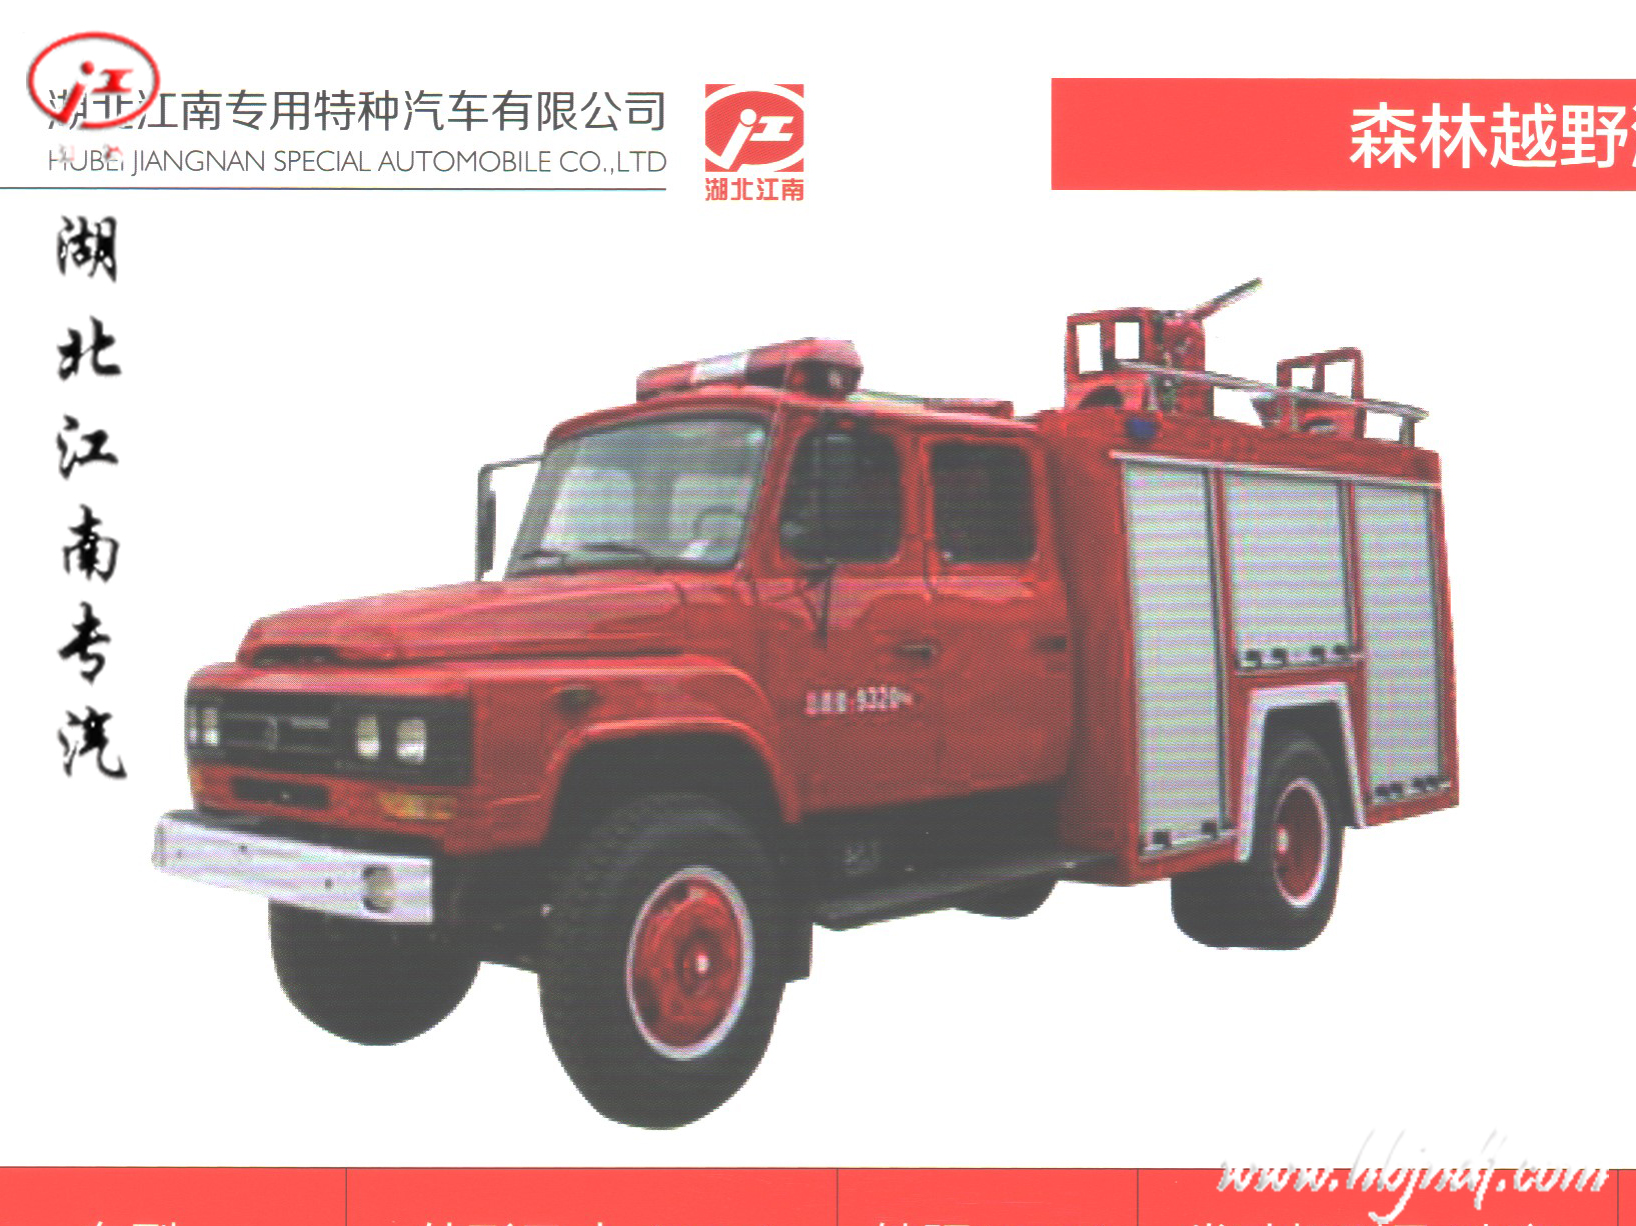 东风140尖头驾驶室3.5吨森林越野消防车产品说明配置介绍15997907388